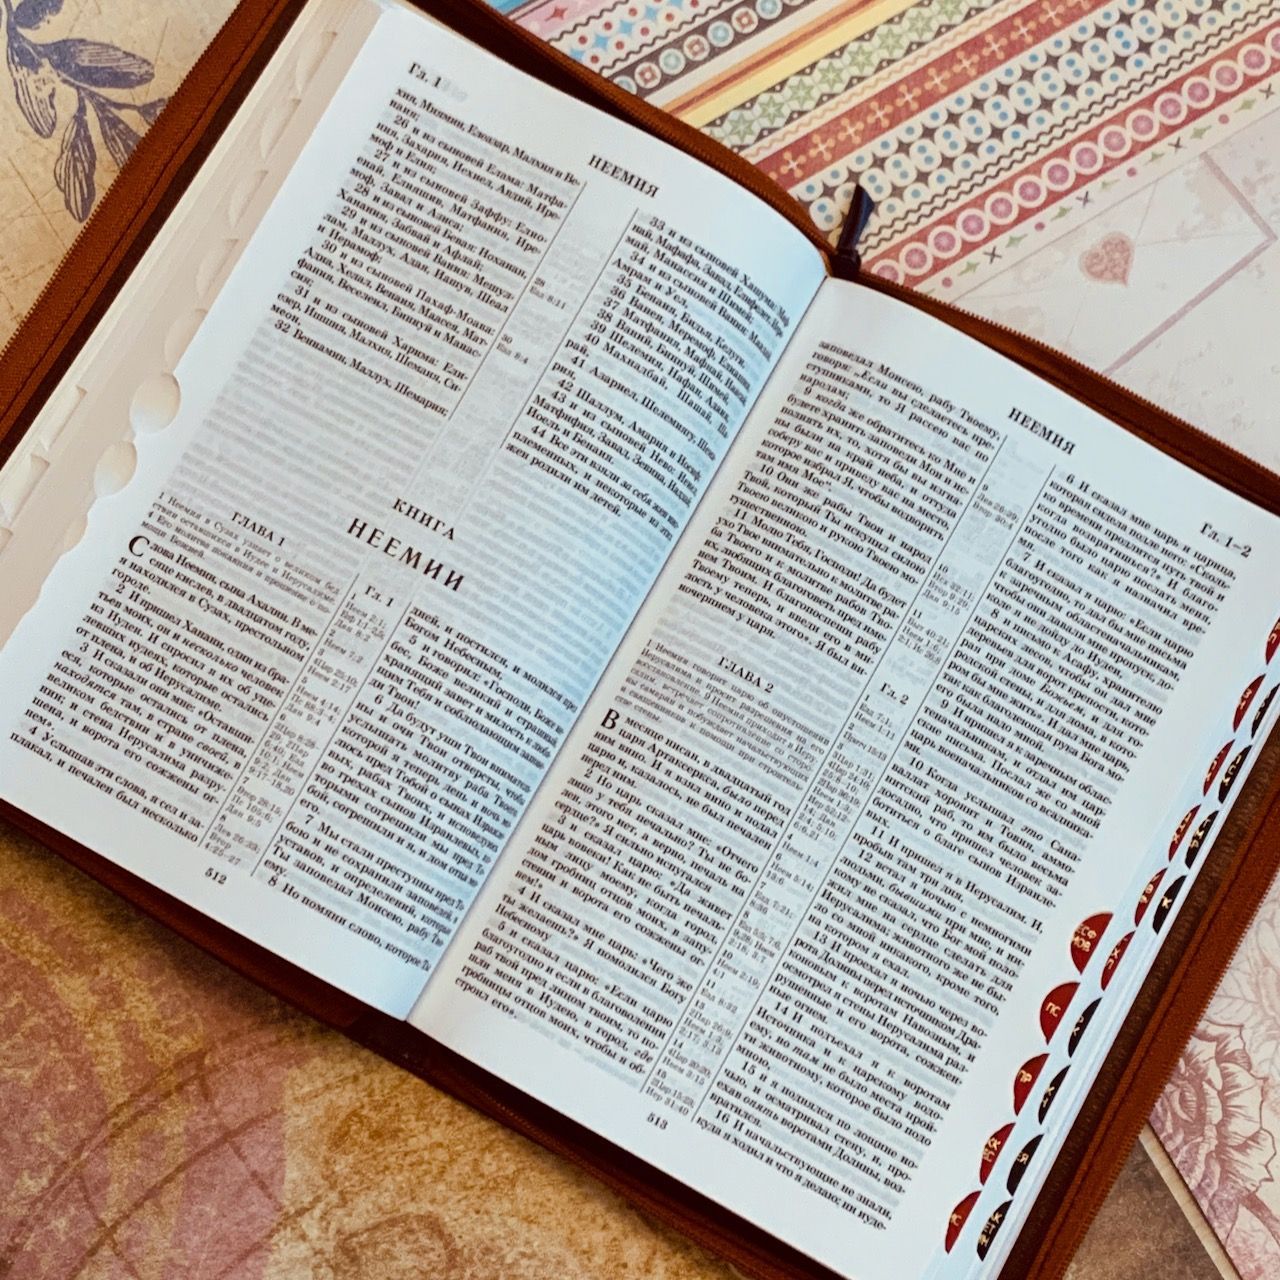 БИБЛИЯ 077zti формат, переплет из искусственной кожи на молнии с индексами, надпись золотом "Библия", цвет бордо металлик металлик, большой формат, 180*260 мм, цветные карты, крупный шрифт